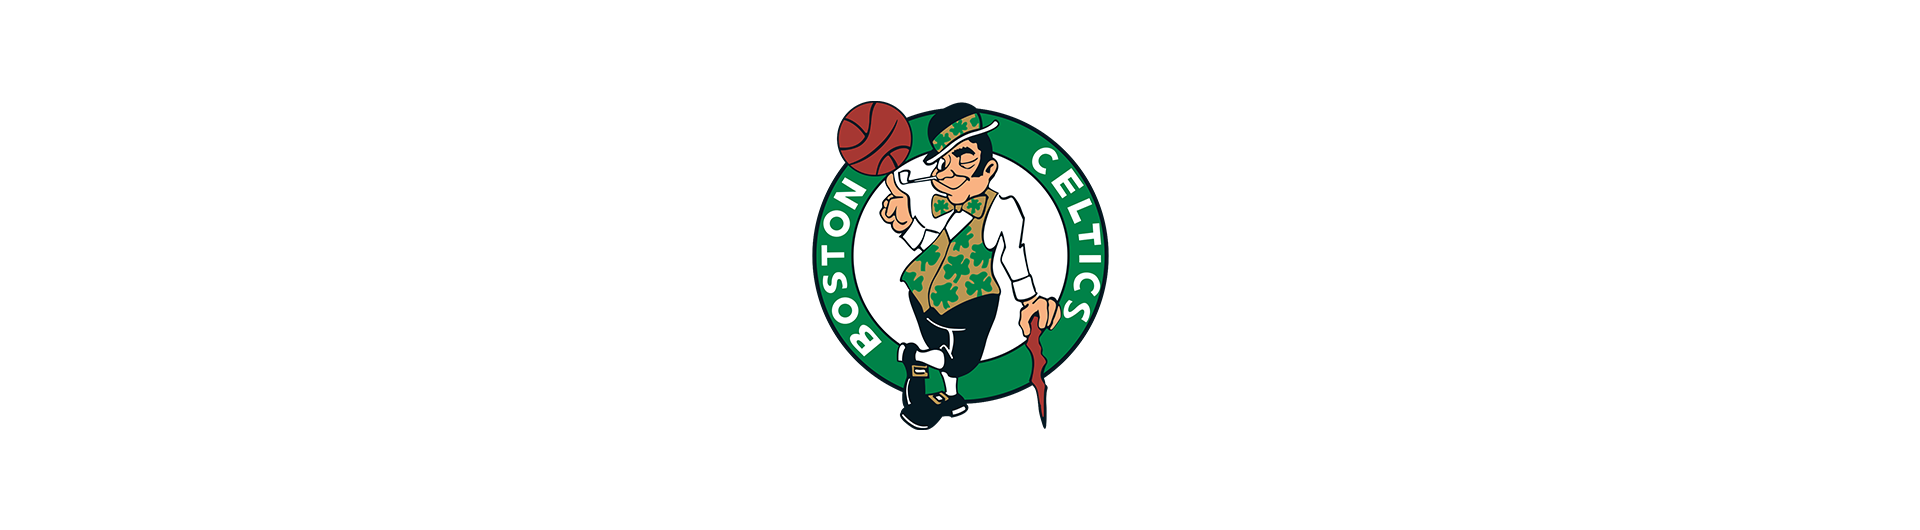 Boston Celtics (BOS)